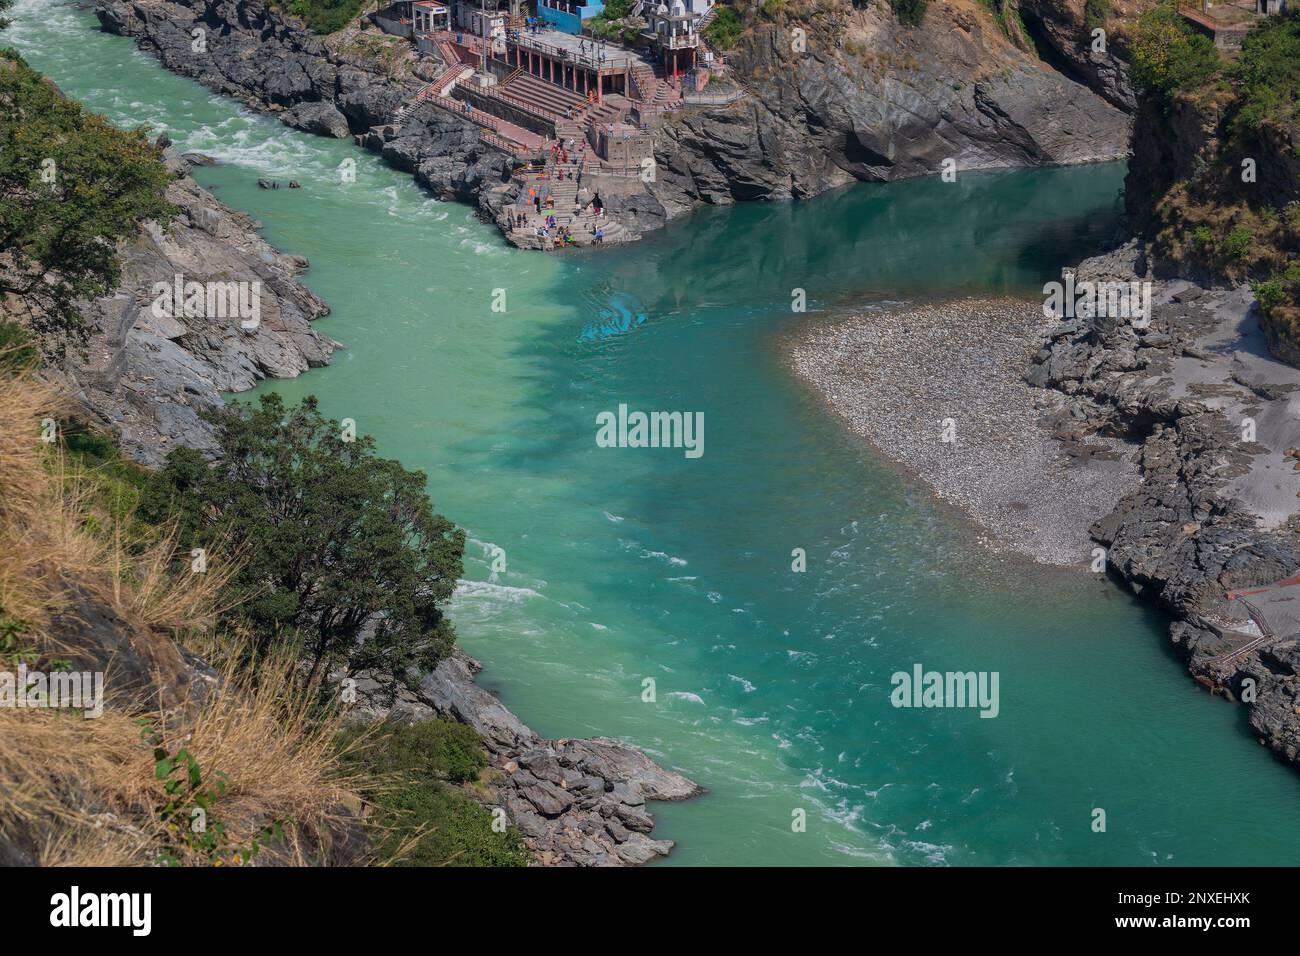 La rivière Bhagirathi du côté gauche et la rivière Alakananda avec la couleur bleu turquoise du côté droit convergent à Devprayag, Holy Conflunece, Himalays, Inde. Banque D'Images